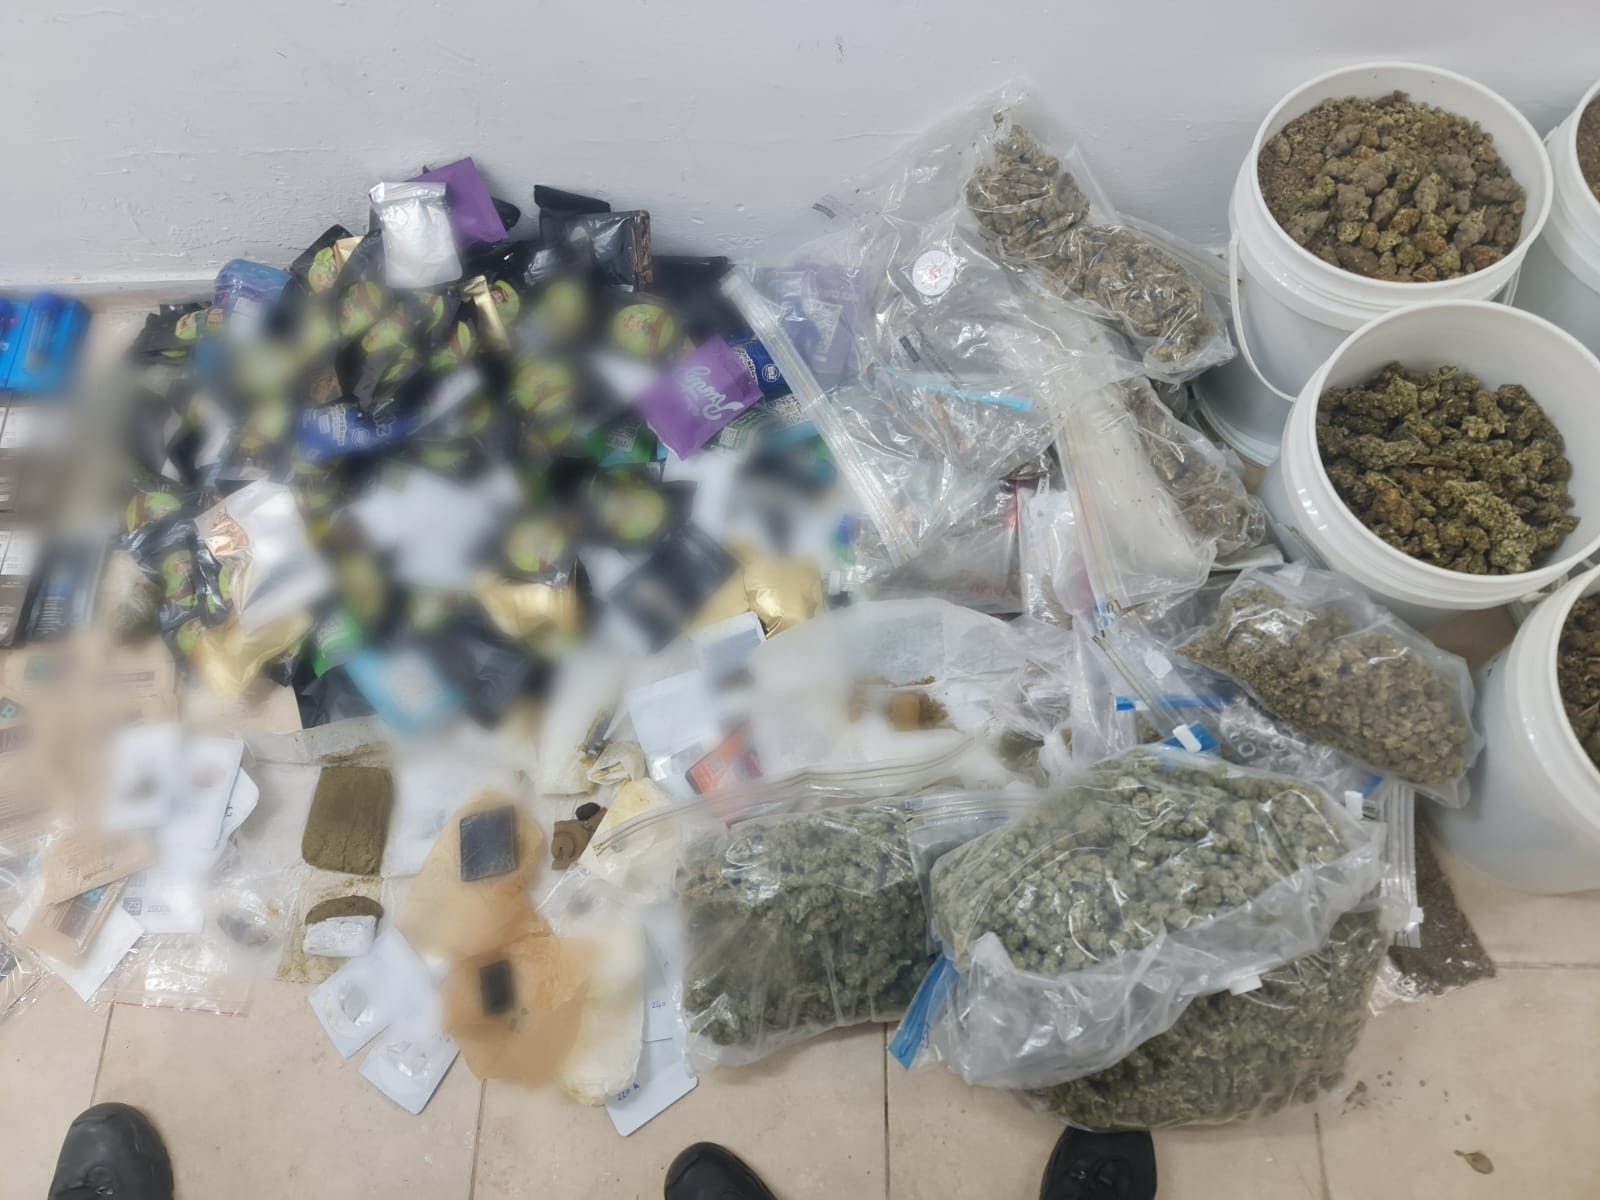 משטרת גבעתיים עצרה חשוד בסחר בסמים שנתפס עם כמות גדולה של סמים וכסף מזומן בסכום של 807,000 ש"ח